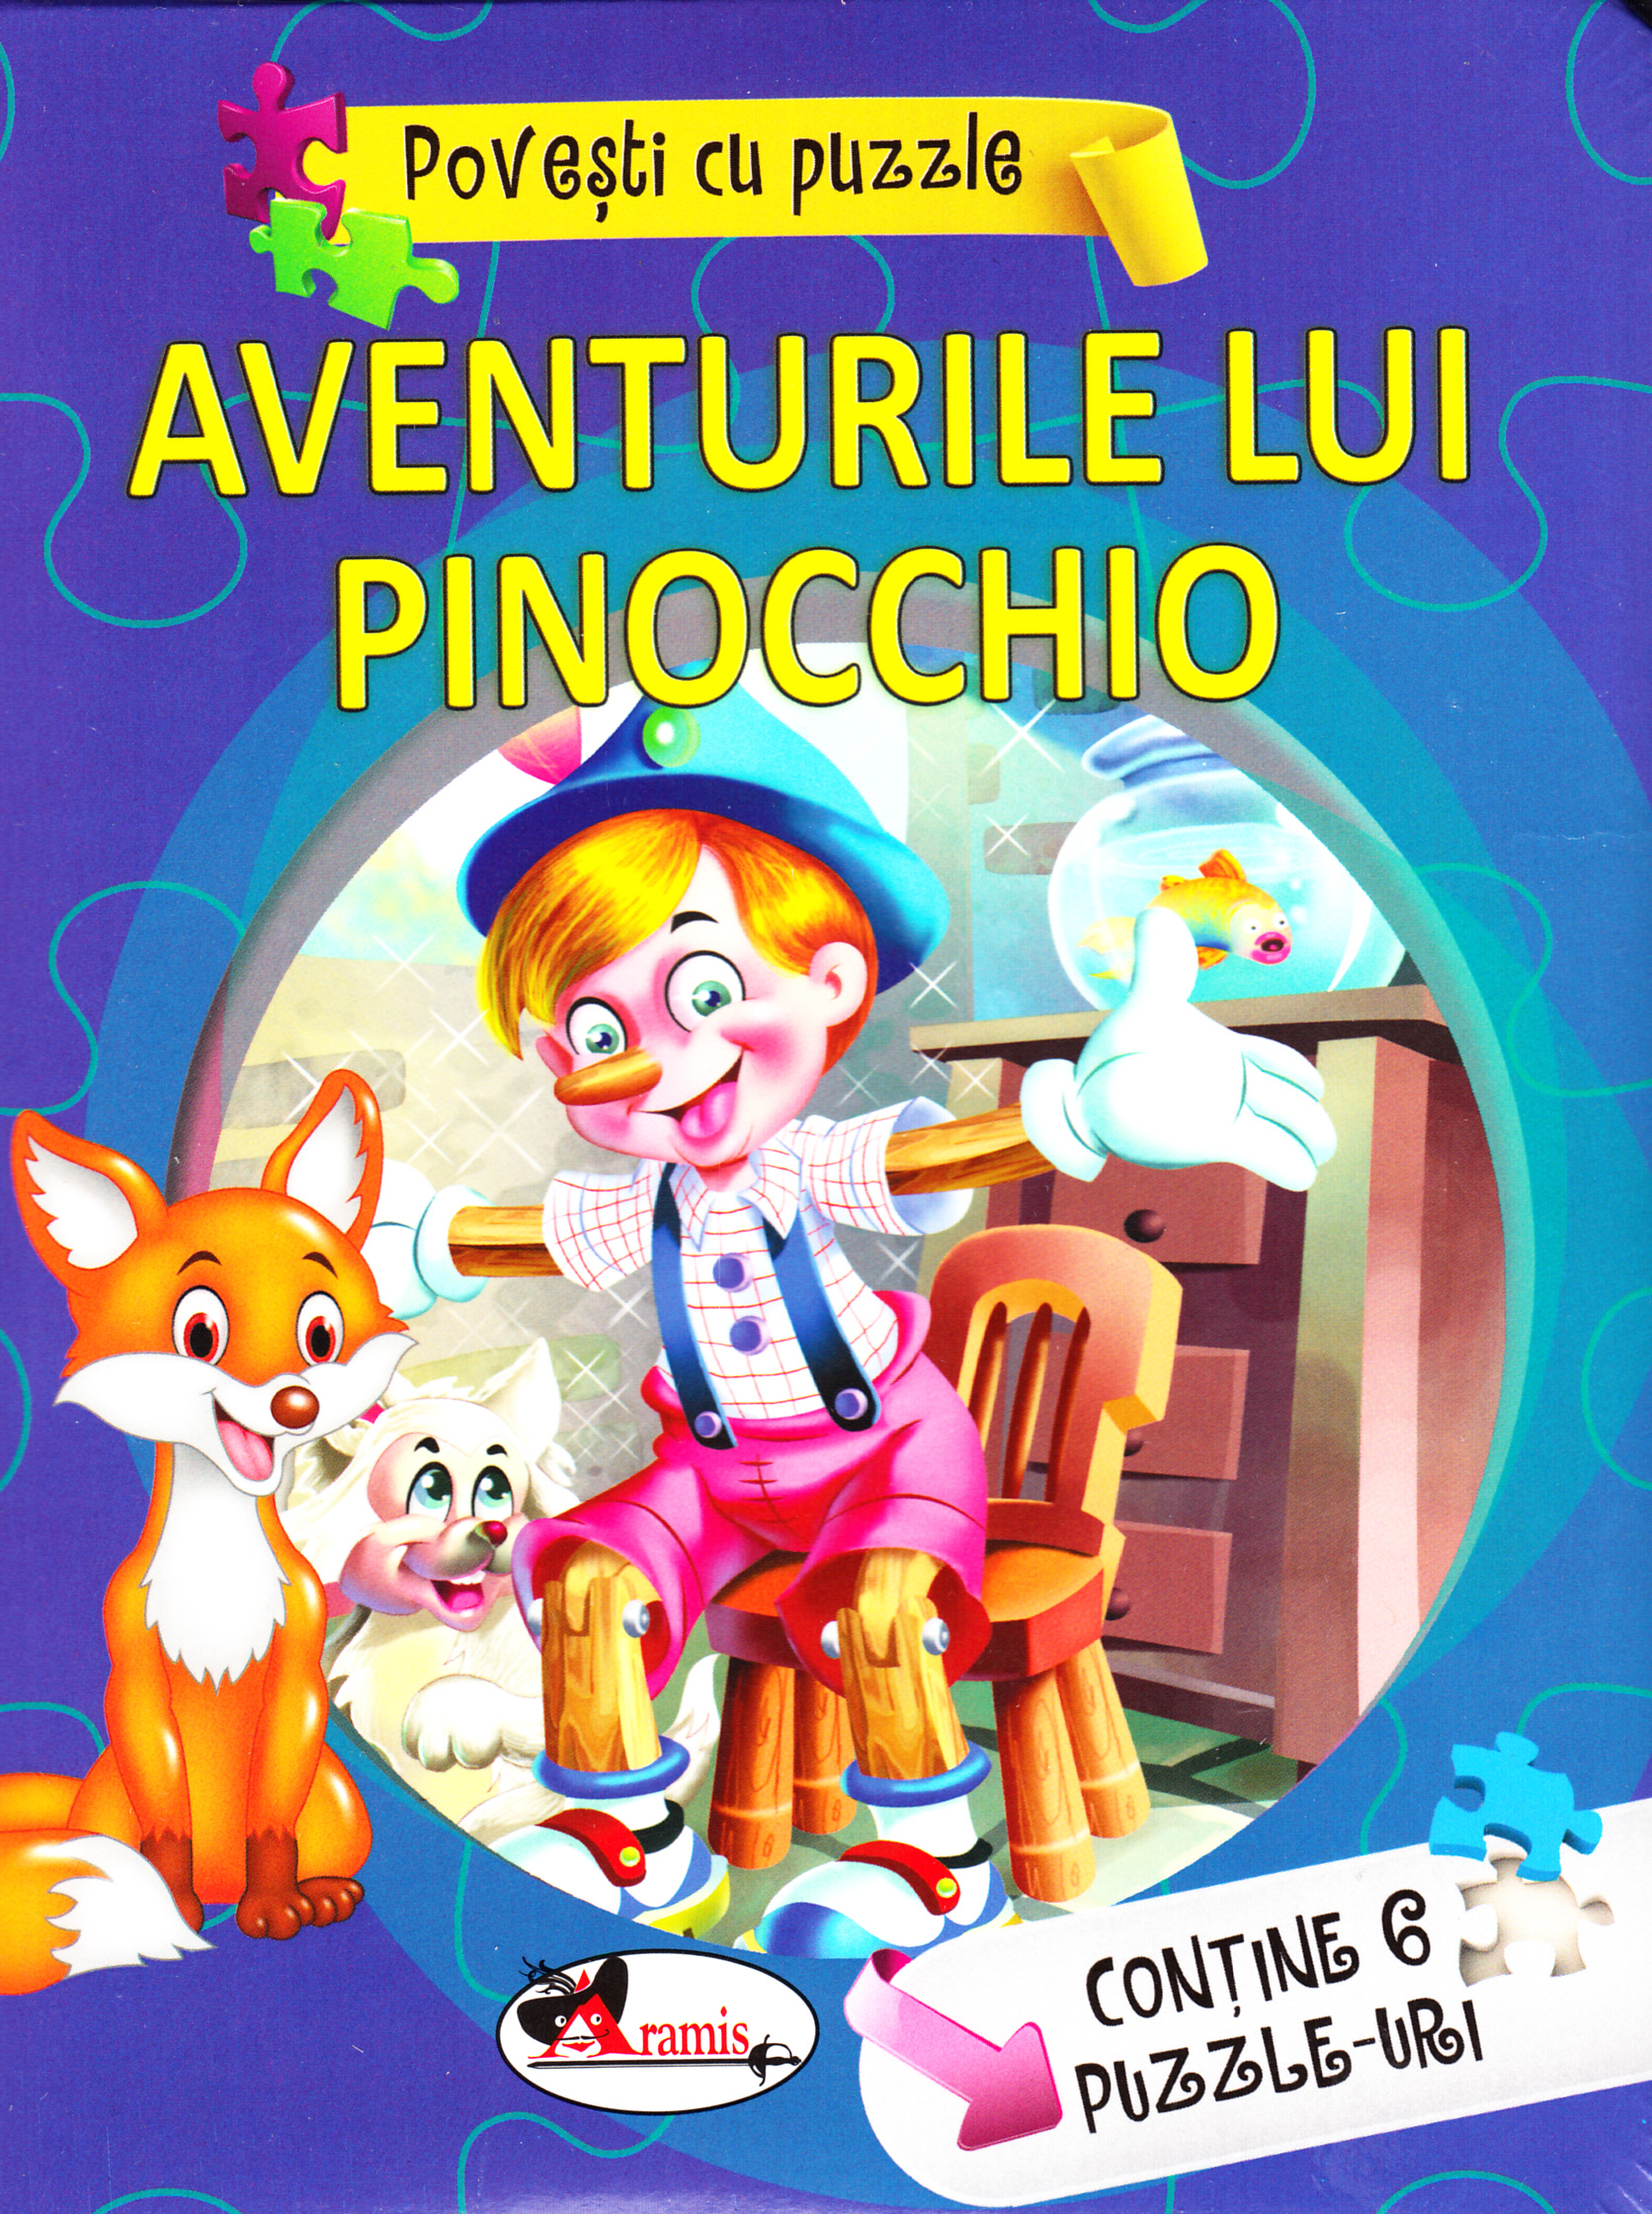 Aventurile lui Pinocchio (Povesti cu puzzle)